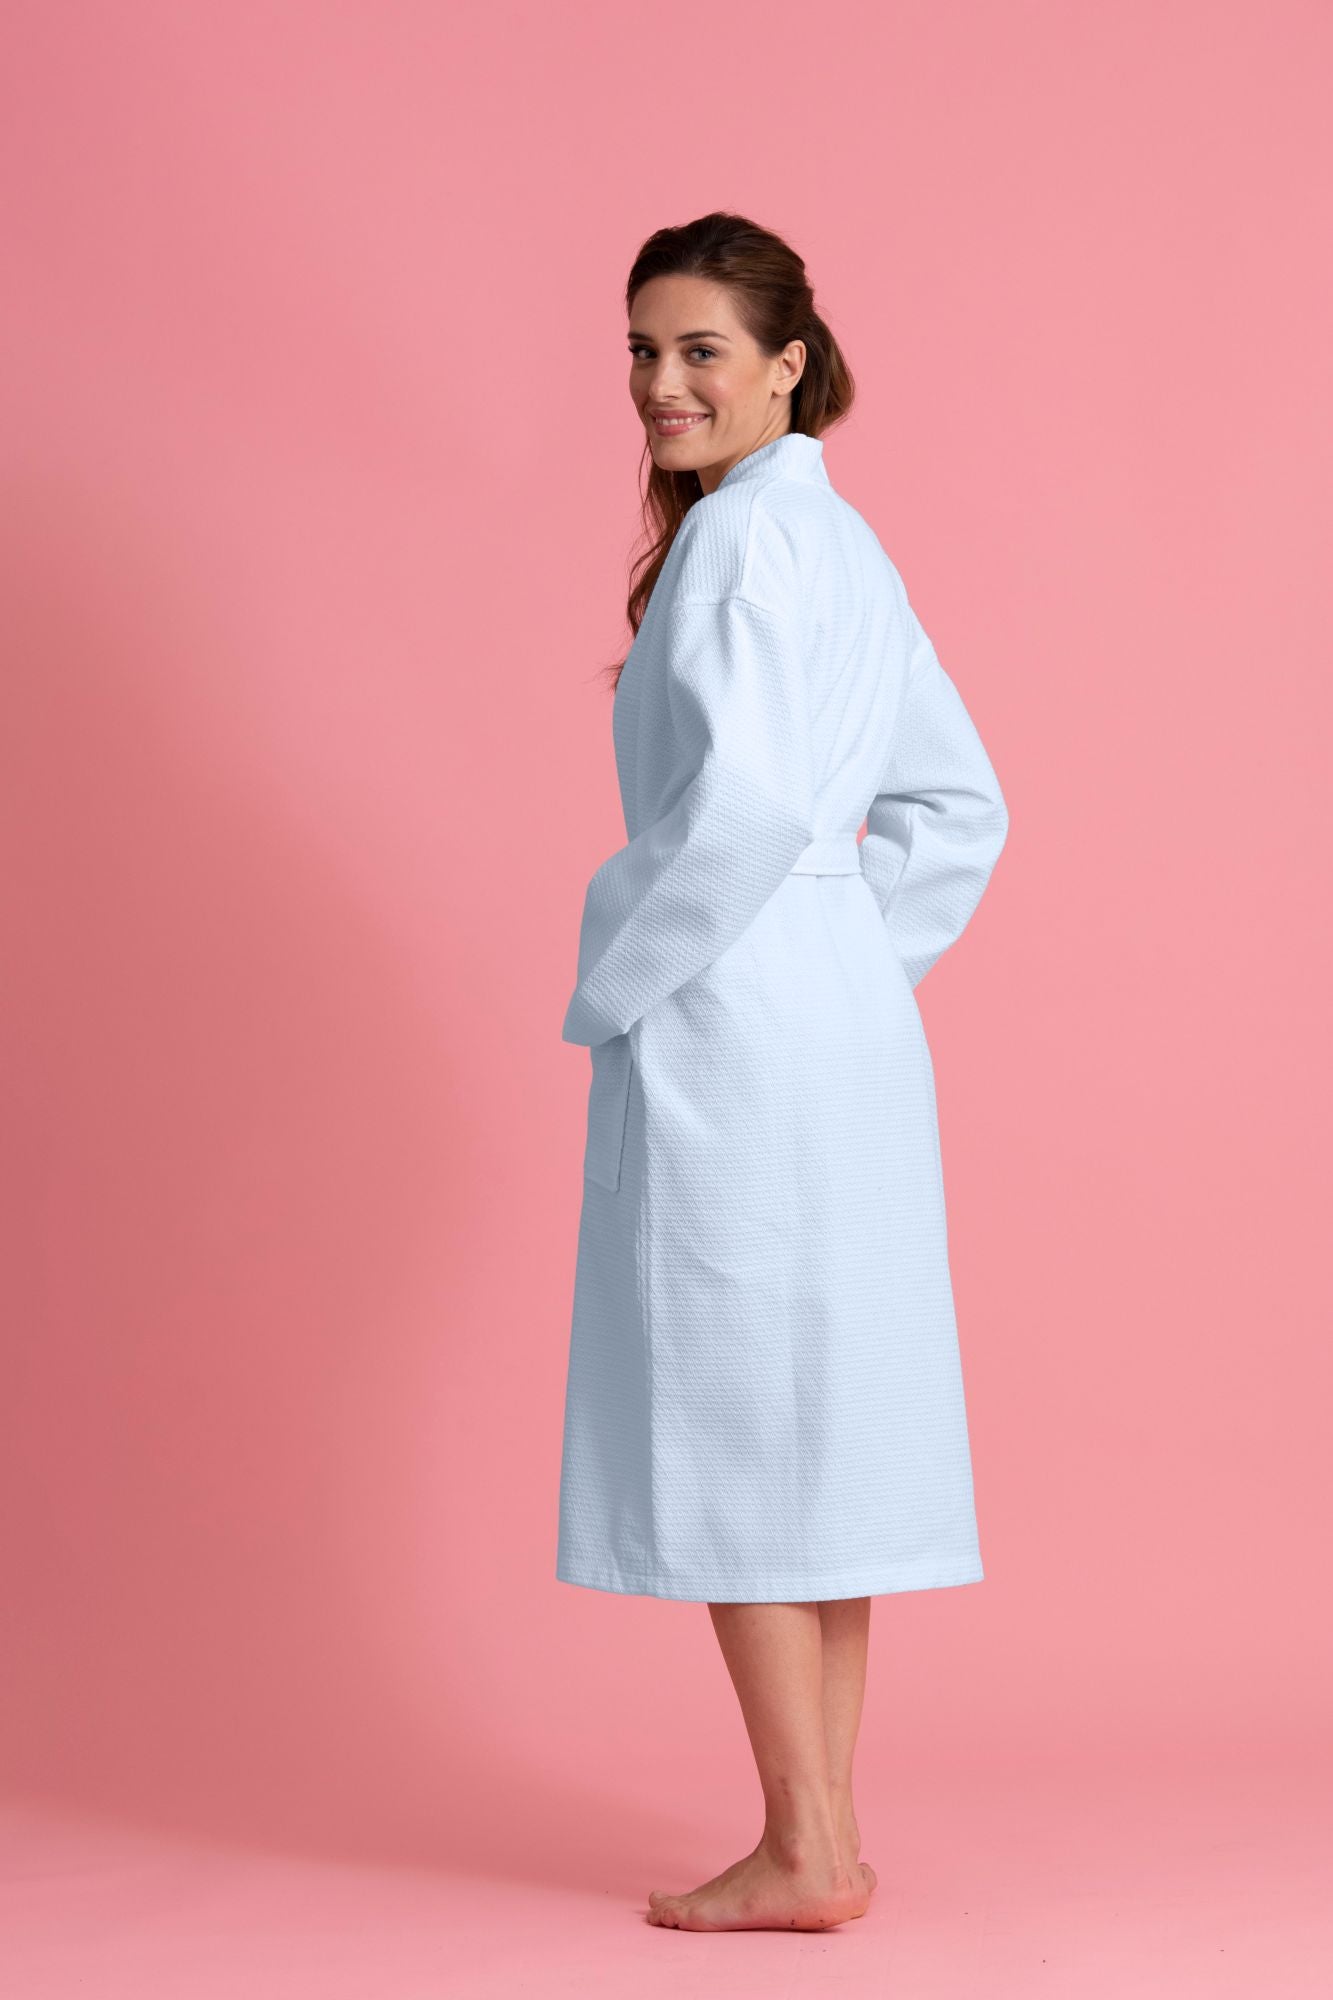 FILMAX Bathrobe Gown 100% Cotton in Terry Towel Unisex Bath Robe (Free Size  - Rani)